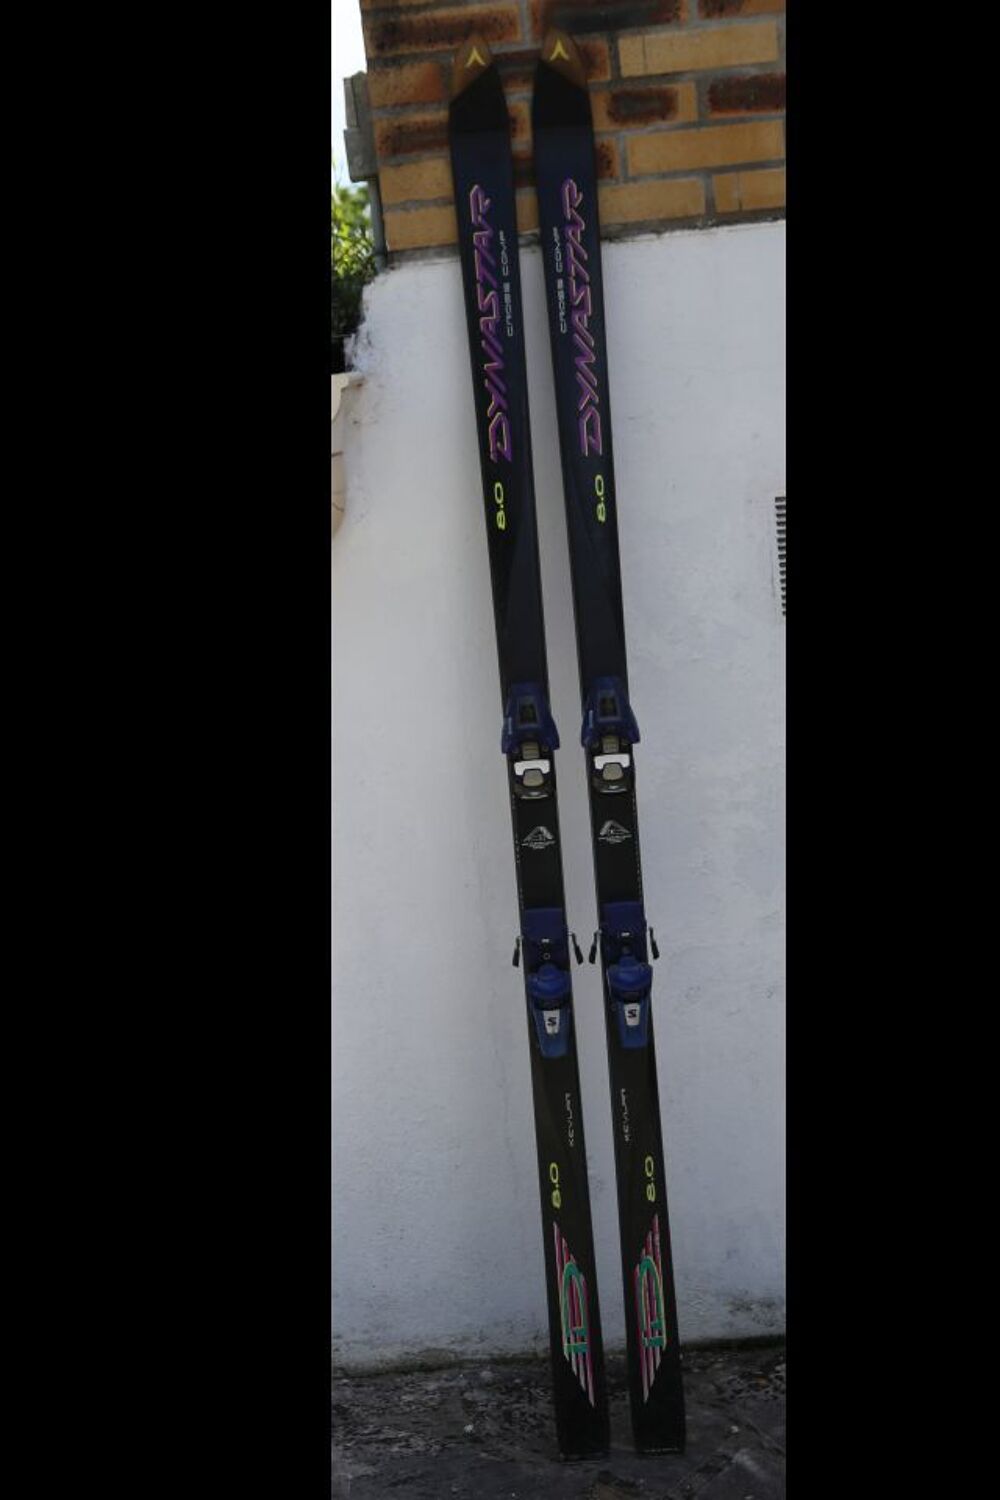 Ski DYNASTAR ID 8.0 + Fixations SALOMON 80 Qudrax
Sports